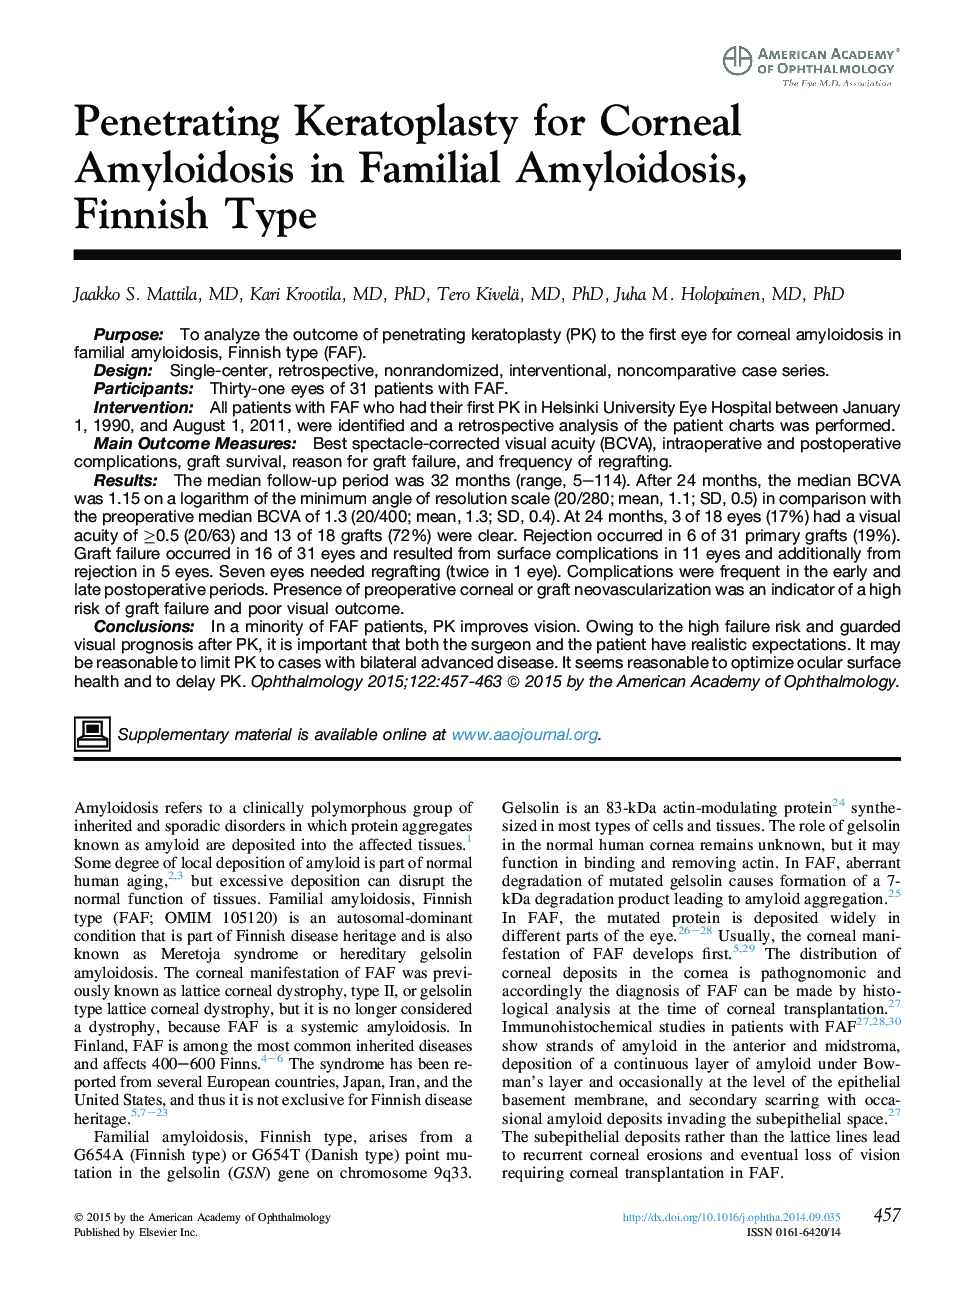 نفوذ کراتوپلاستی برای آمیلوئیدوز قرنیه در خانواده آمیلوئیدوز، نوع فنلاندی؟ 